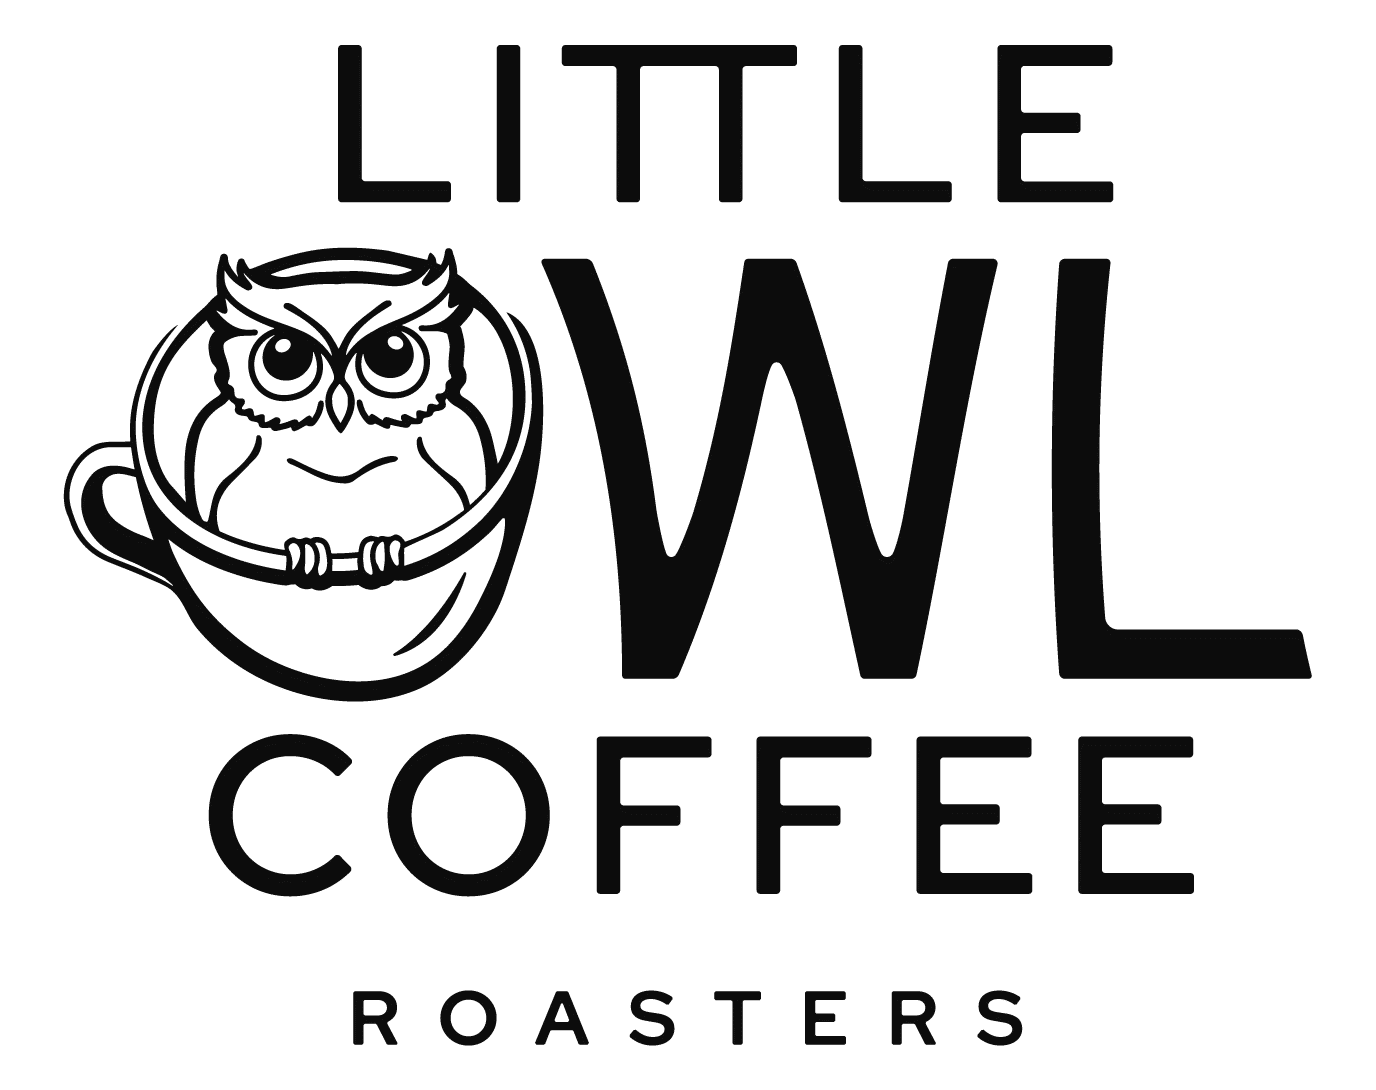 Little Owl Coffee Roasters